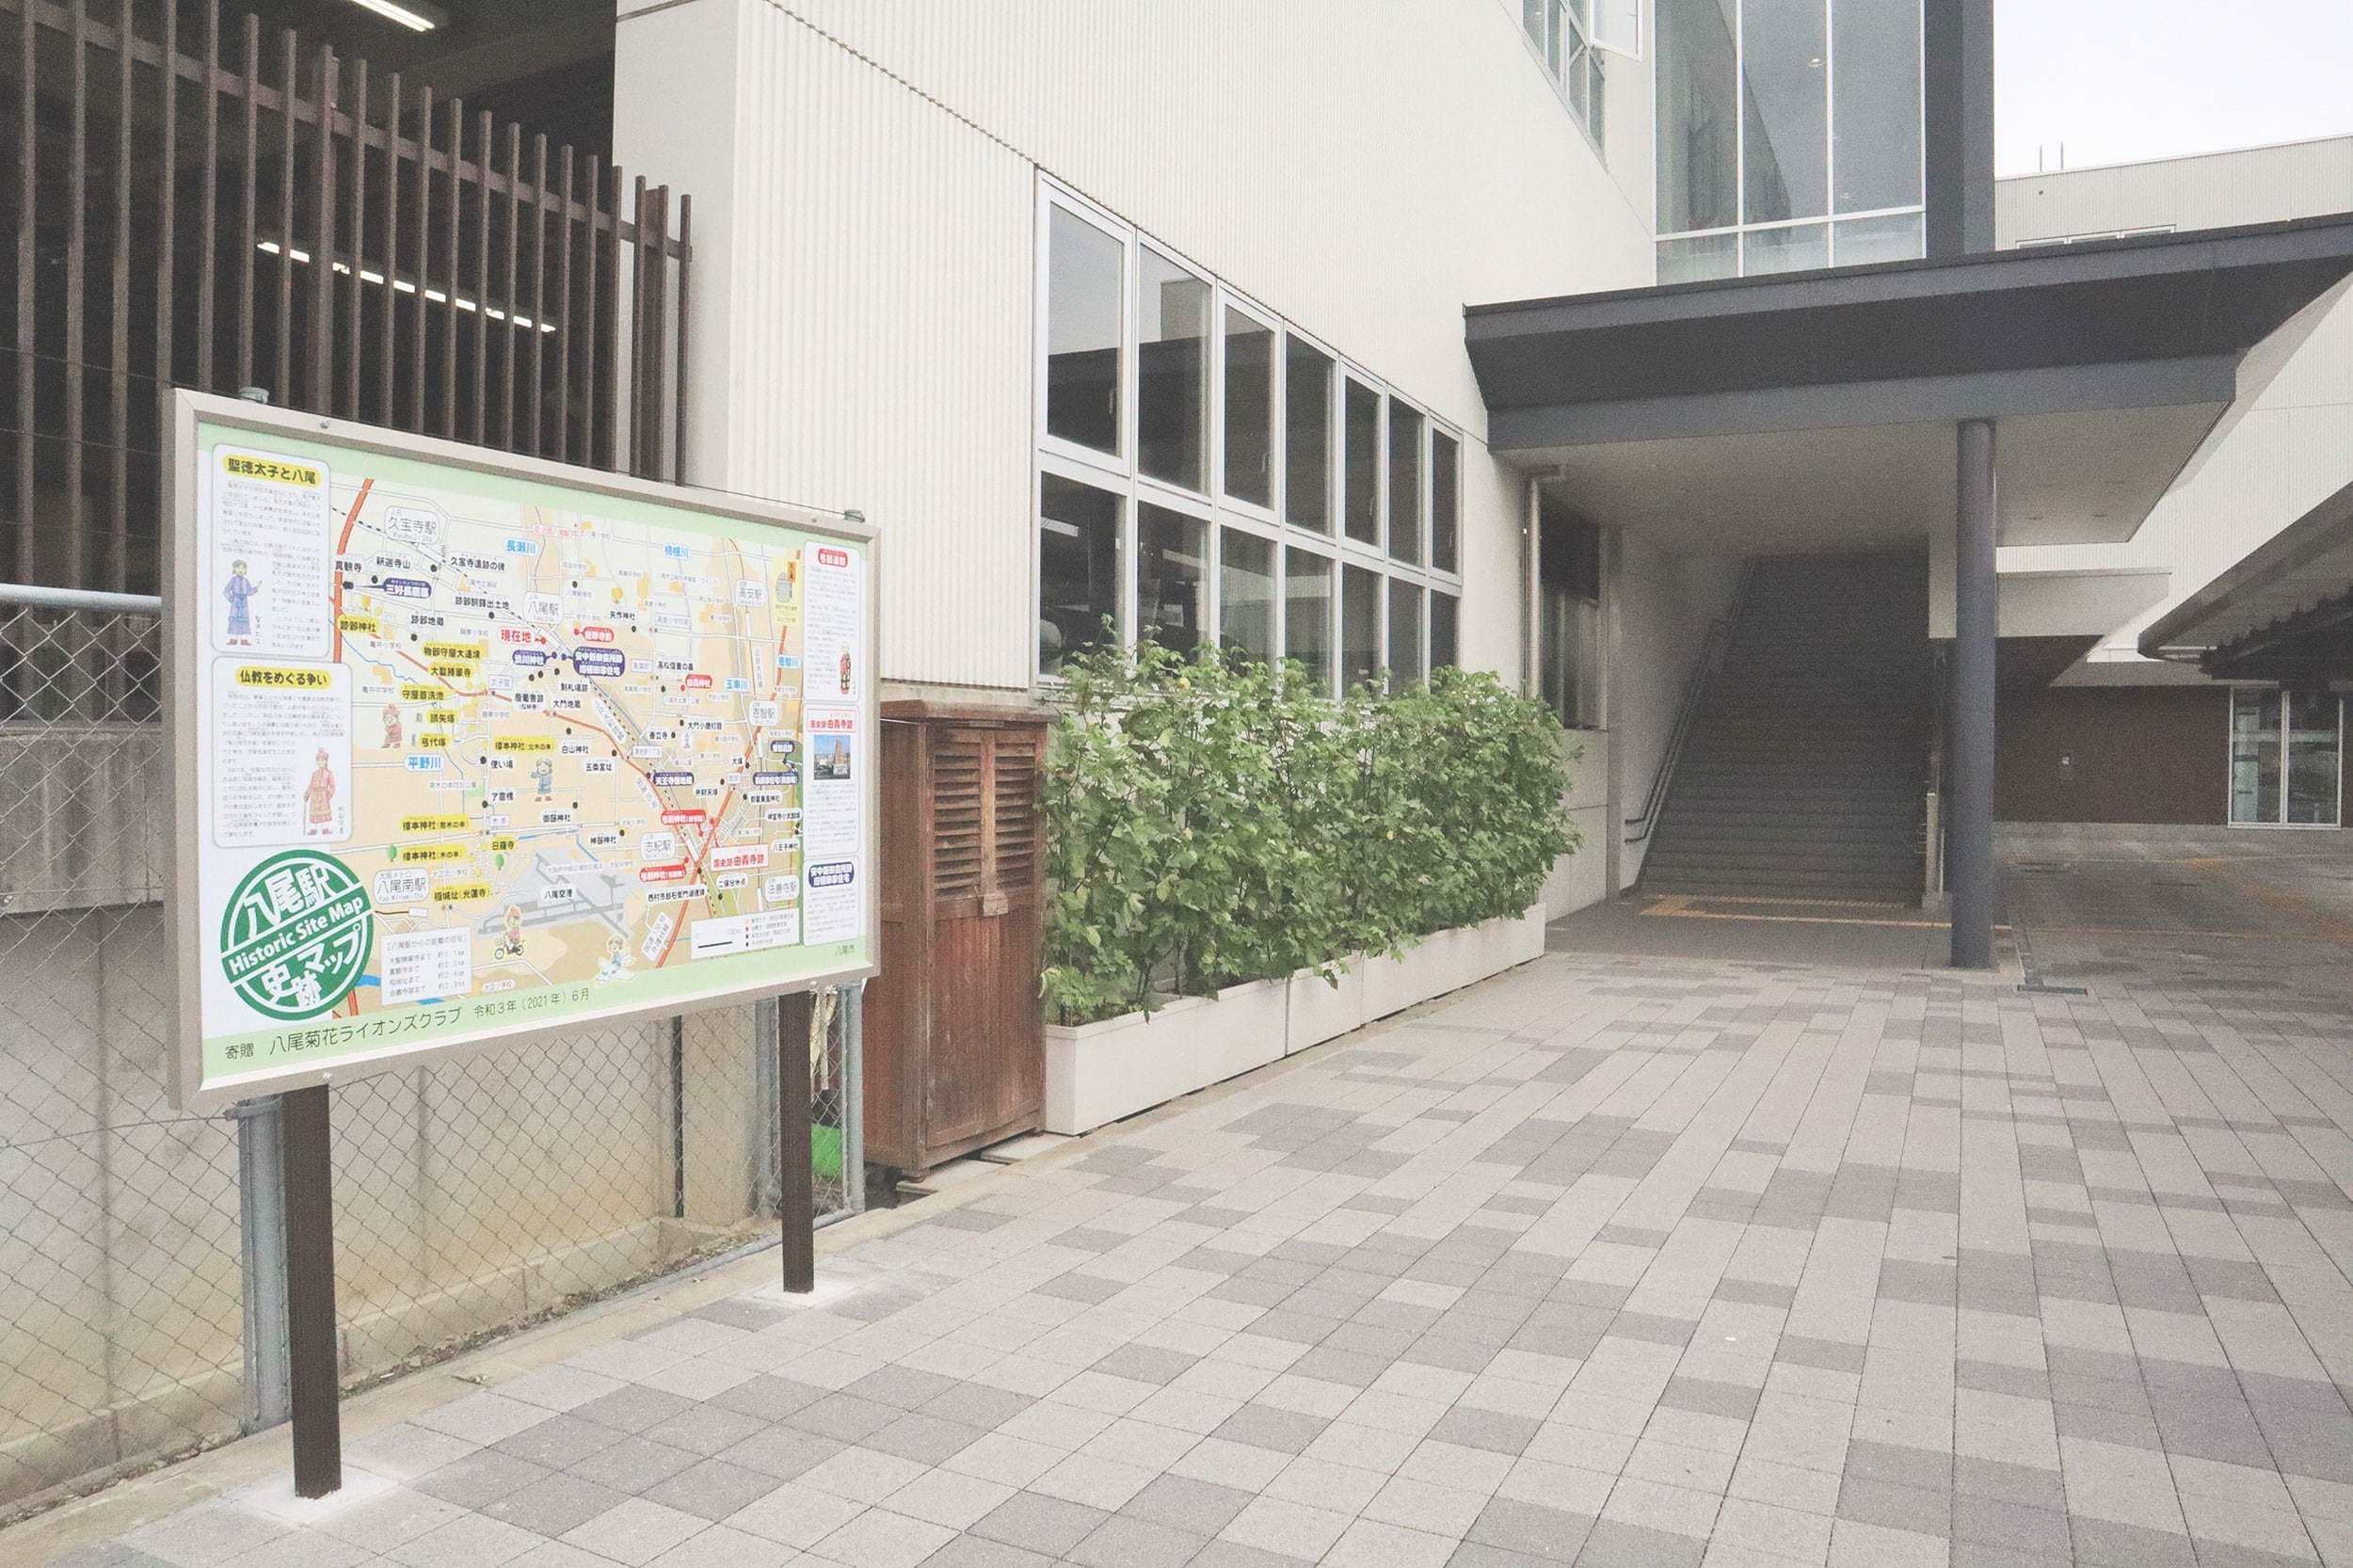 「八尾駅史跡マップ」がJR八尾駅南口に設置